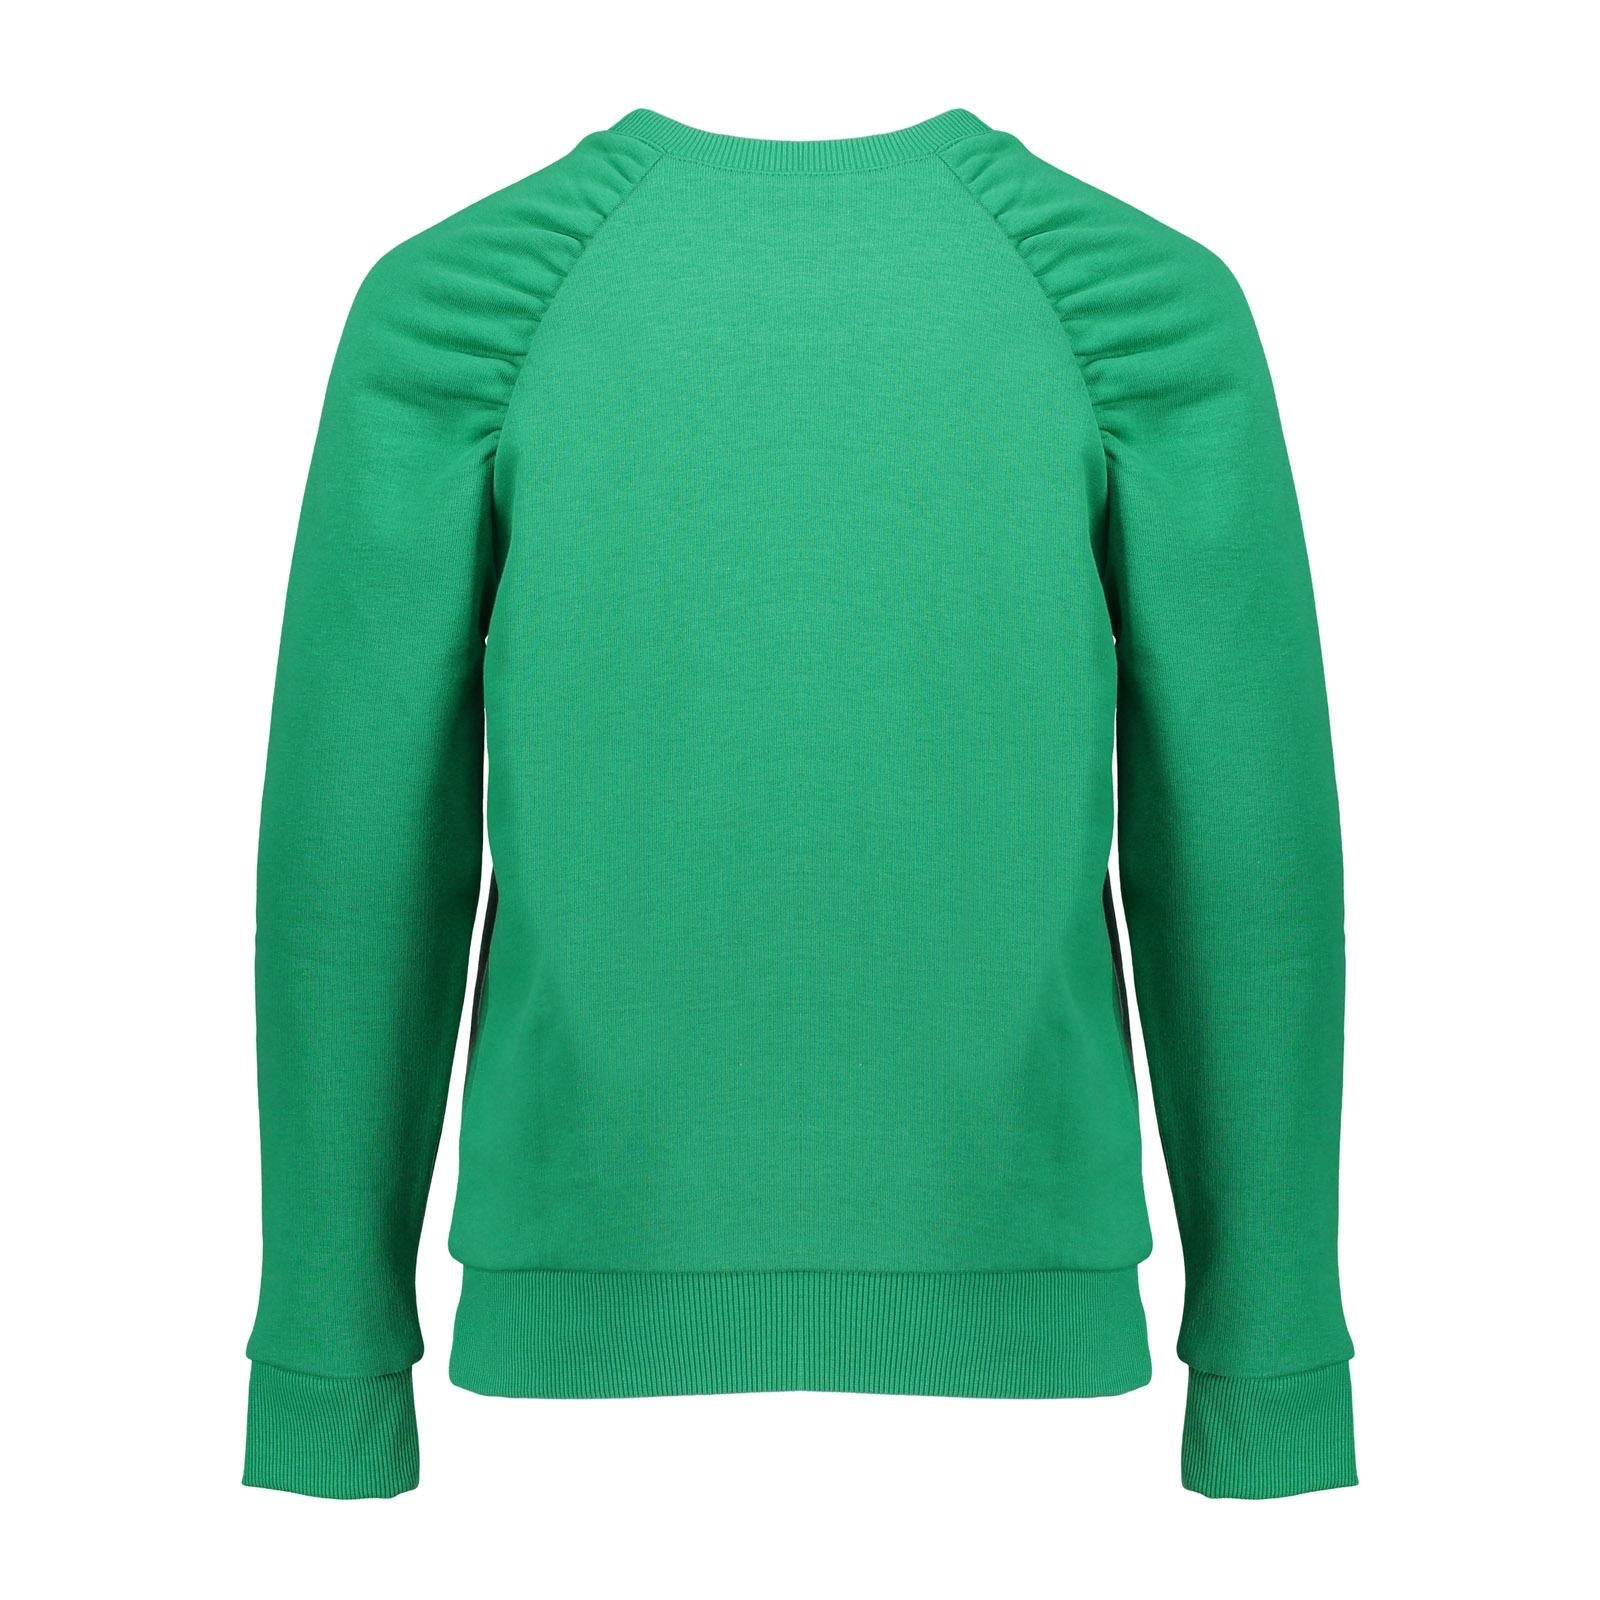 Meisjes Sweater pleads at arm van Geisha in de kleur Evergreen in maat 176.